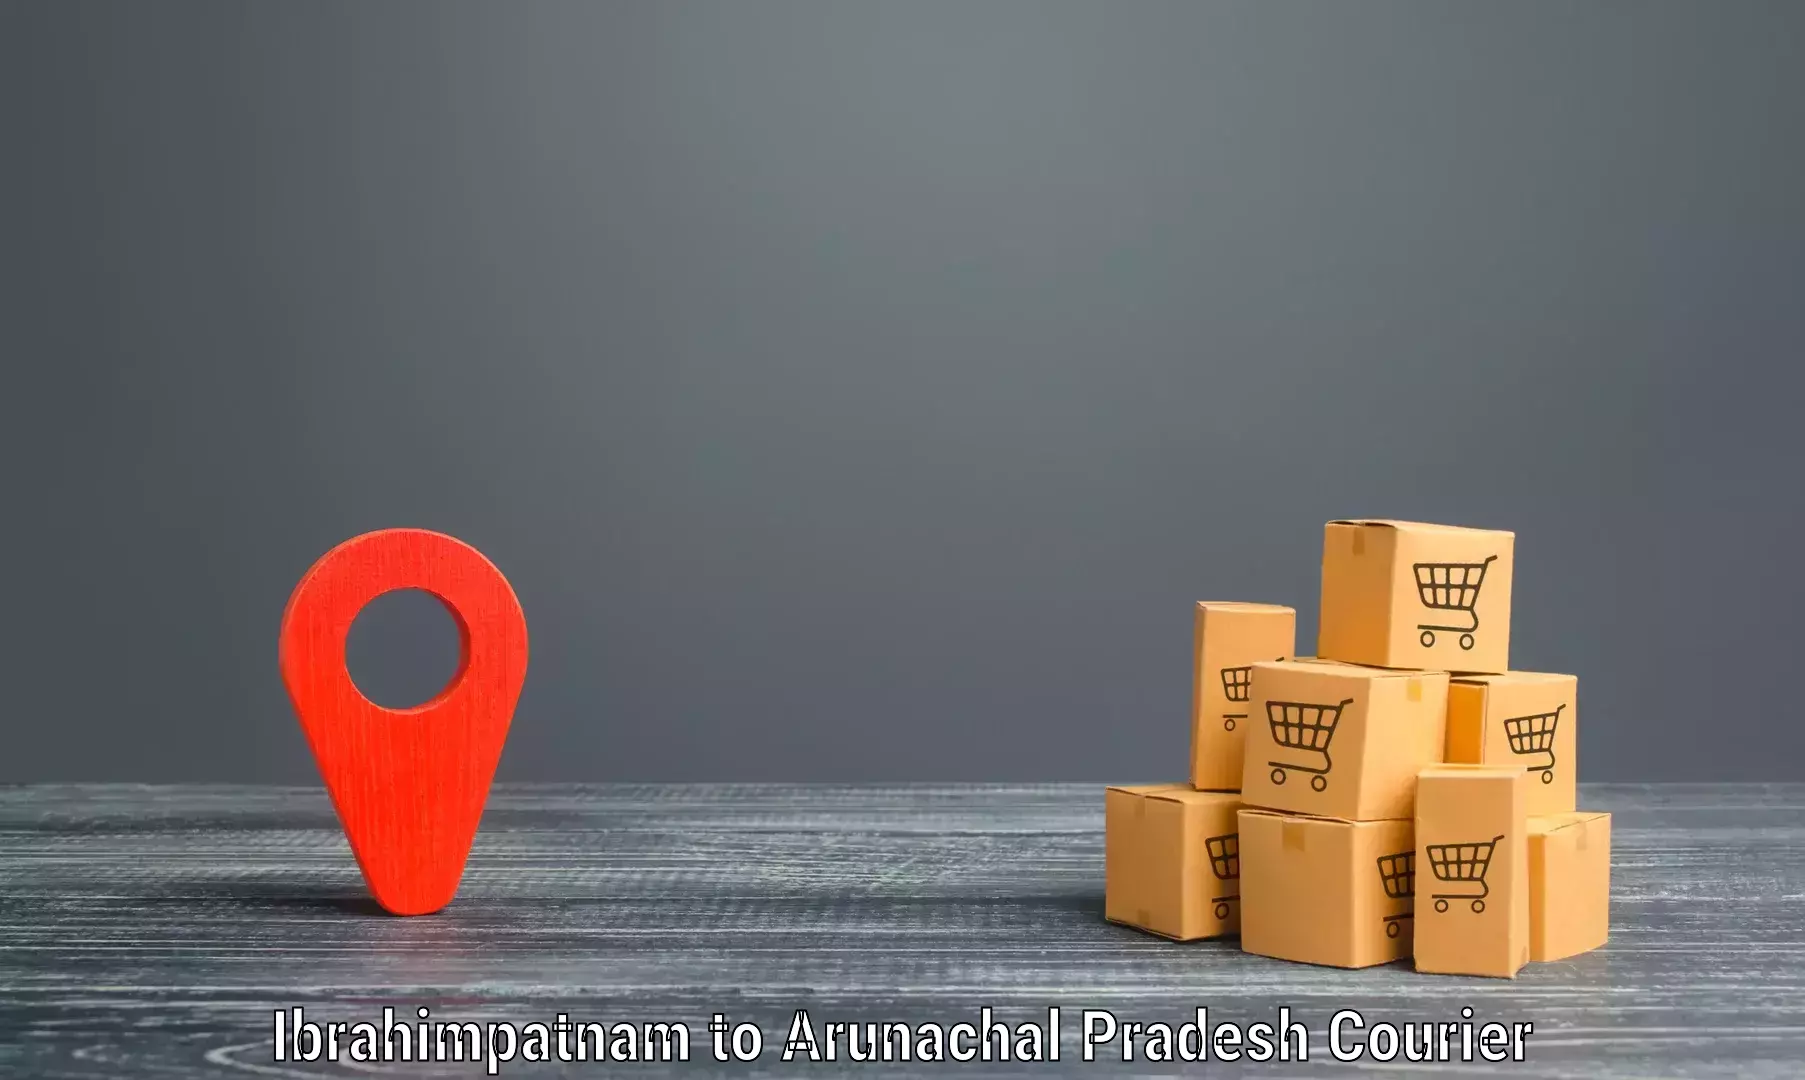 Reliable parcel services Ibrahimpatnam to Deomali